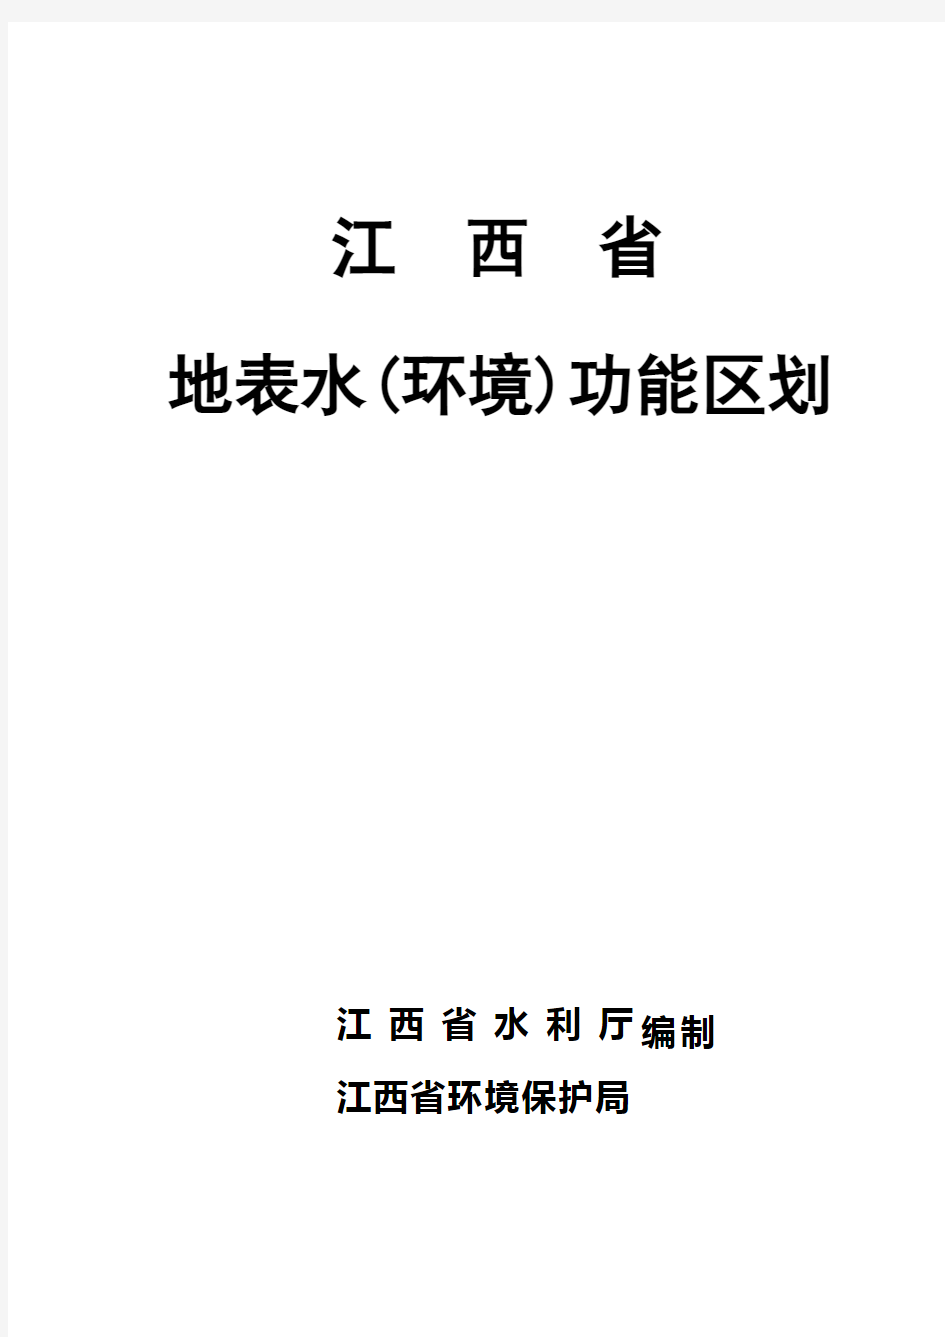 江西省地表水(环境)功能区划说明(定稿共同印发稿)20070807